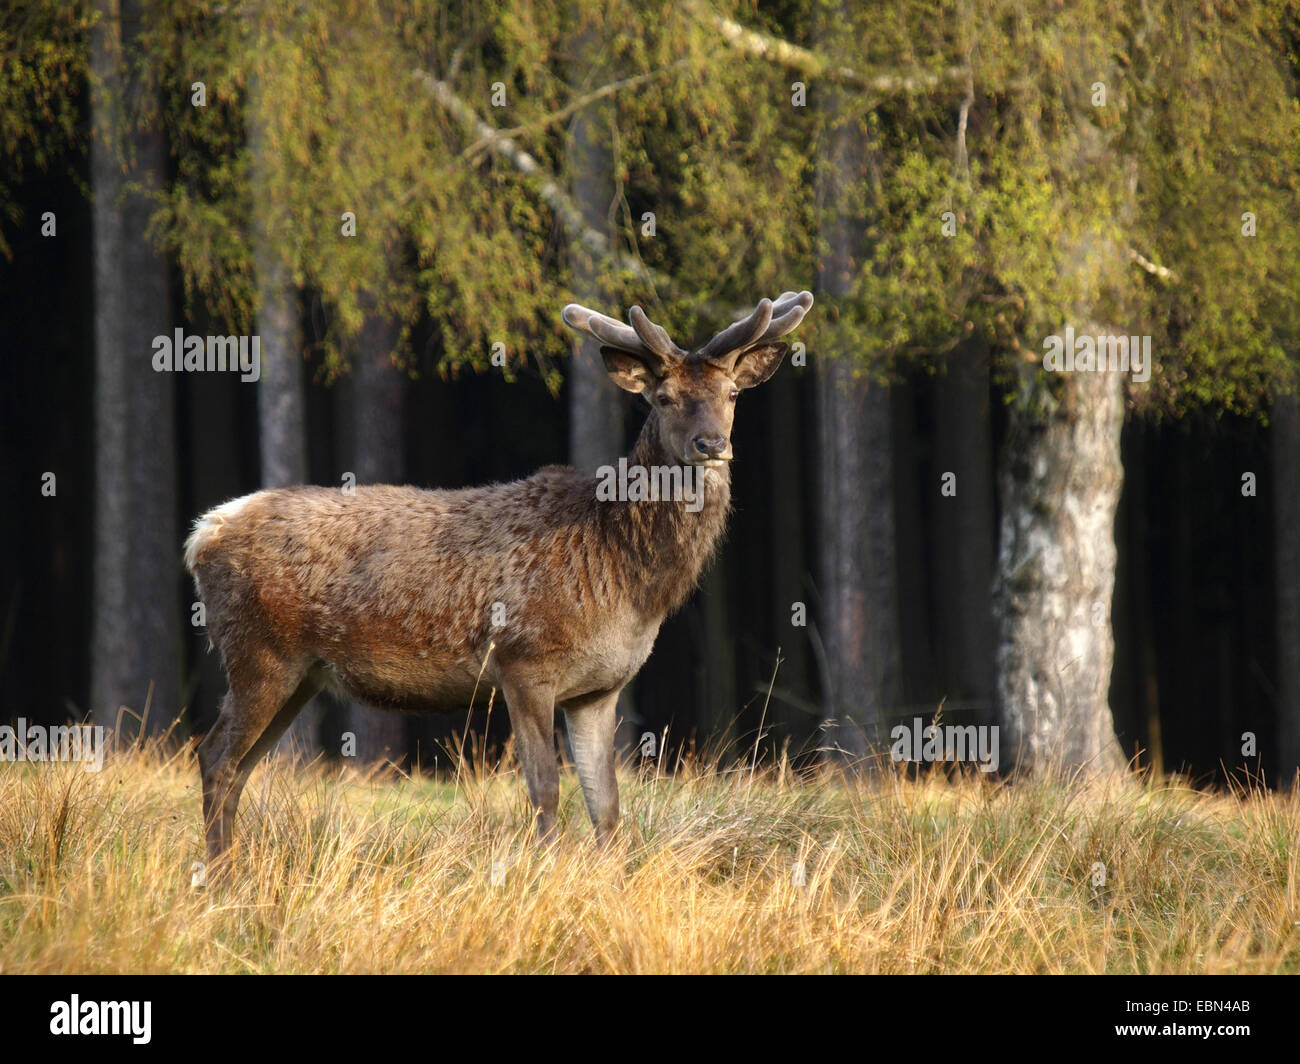 Red Deer (Cervus elaphus), bull dans un pré à la lisière des forêts, Allemagne Banque D'Images